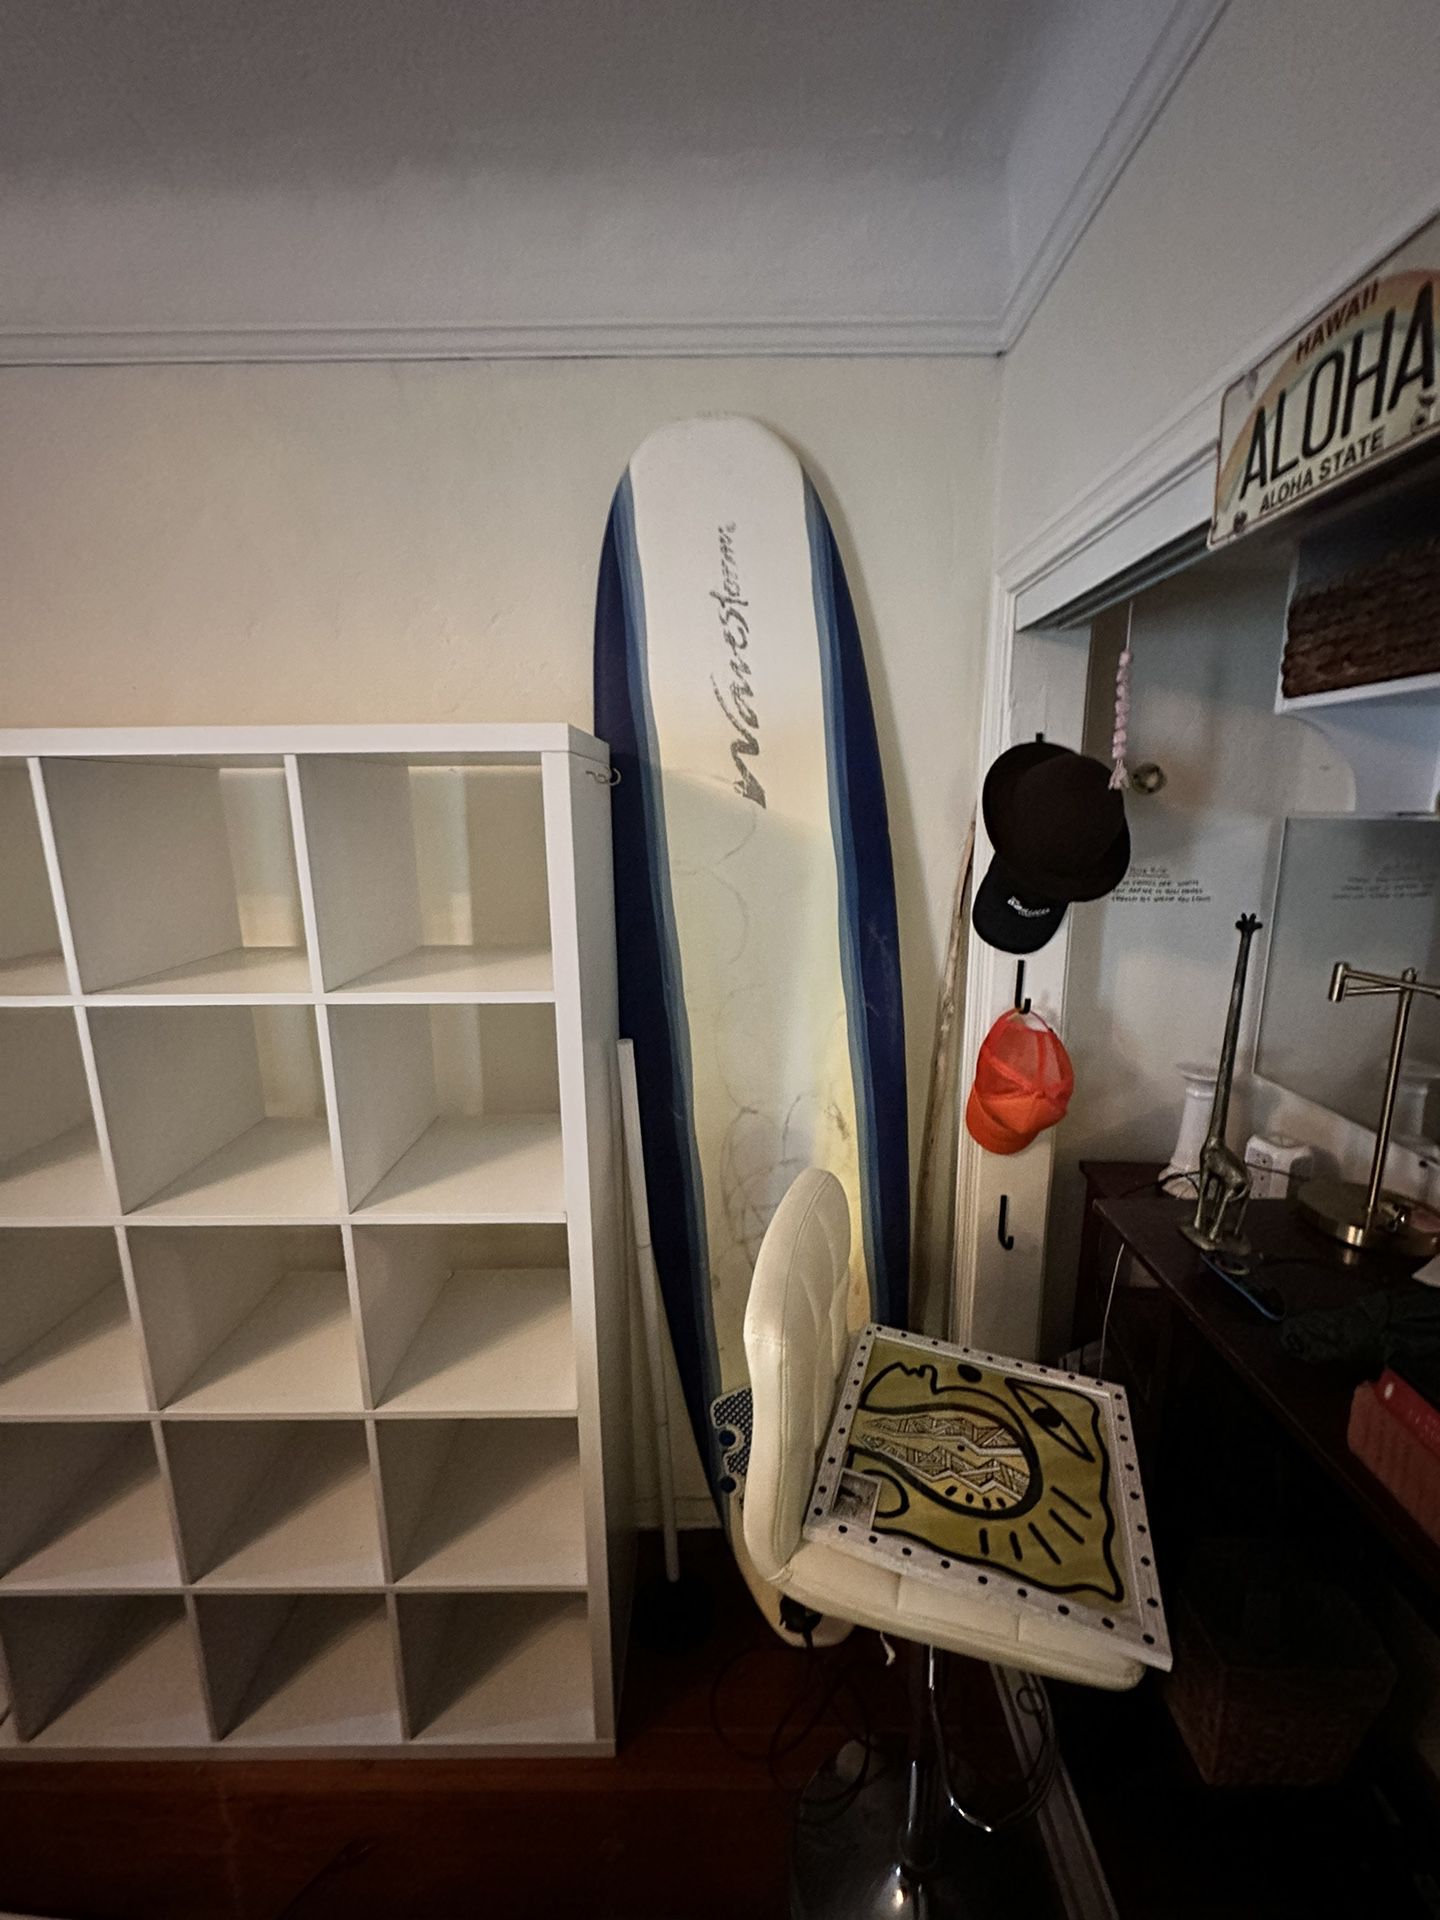 Surfboard 8ft